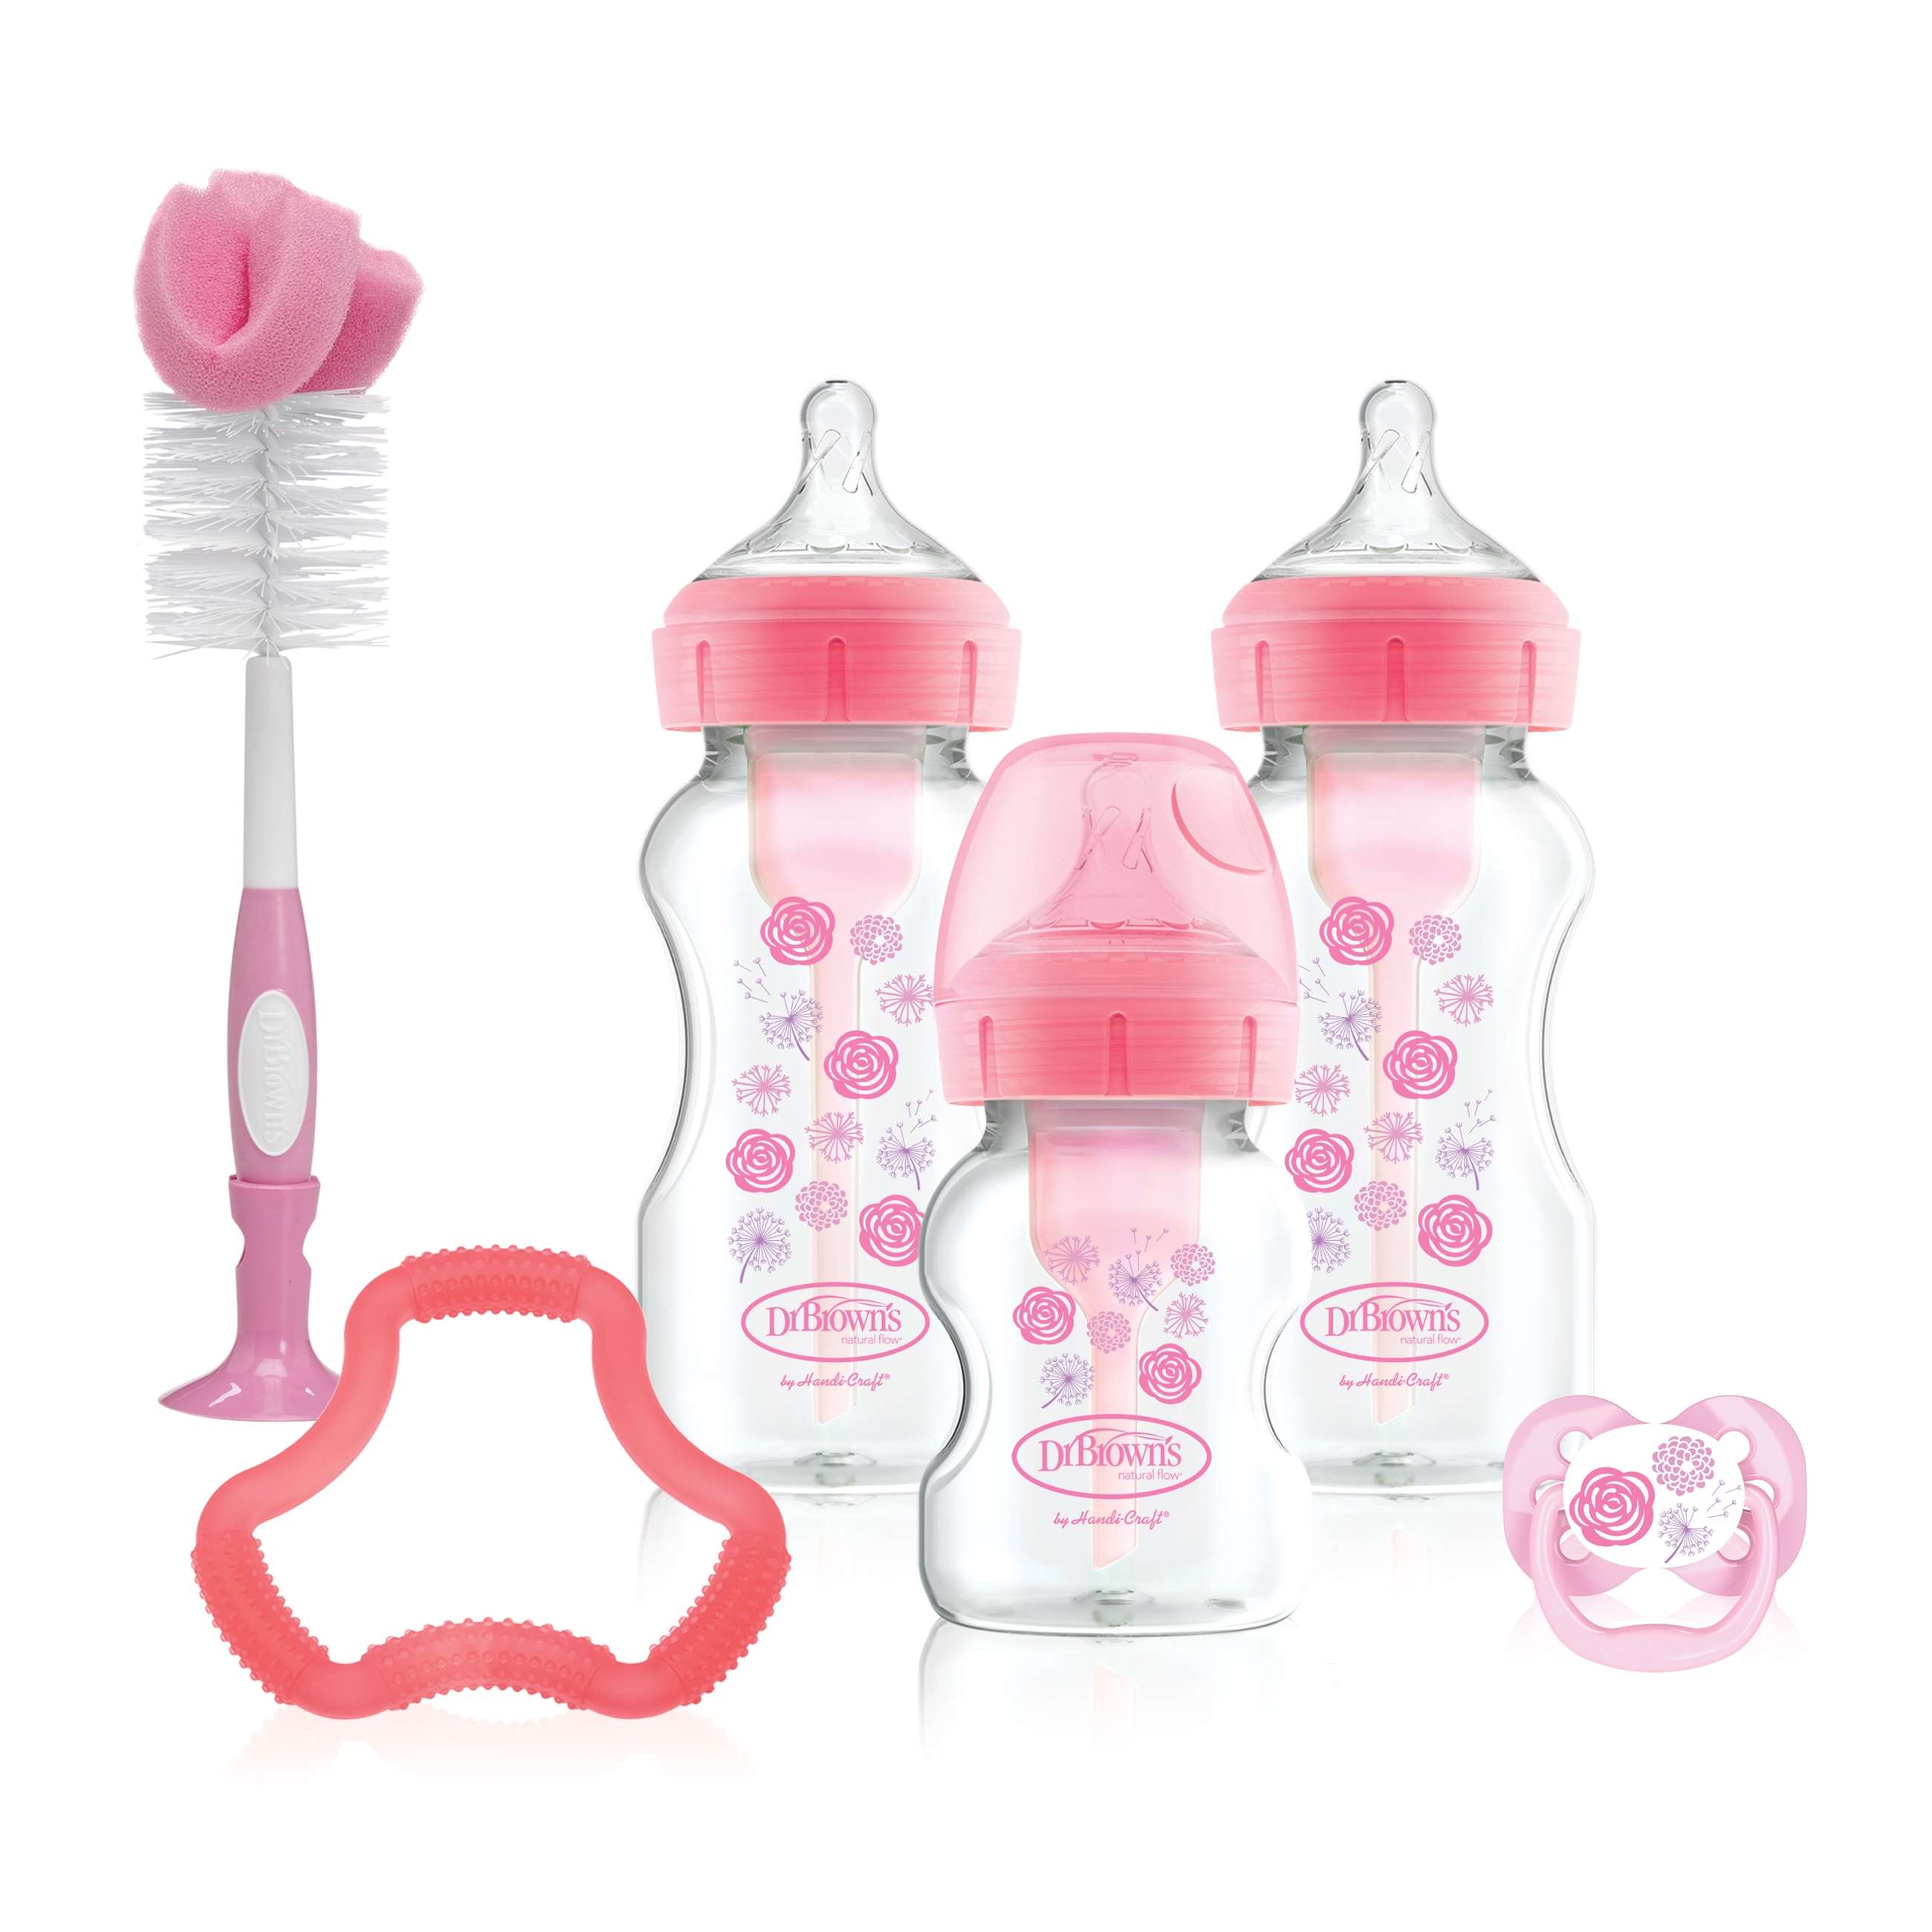 94009 esx_product_options _wide-neck_pink_bottle_gift_set